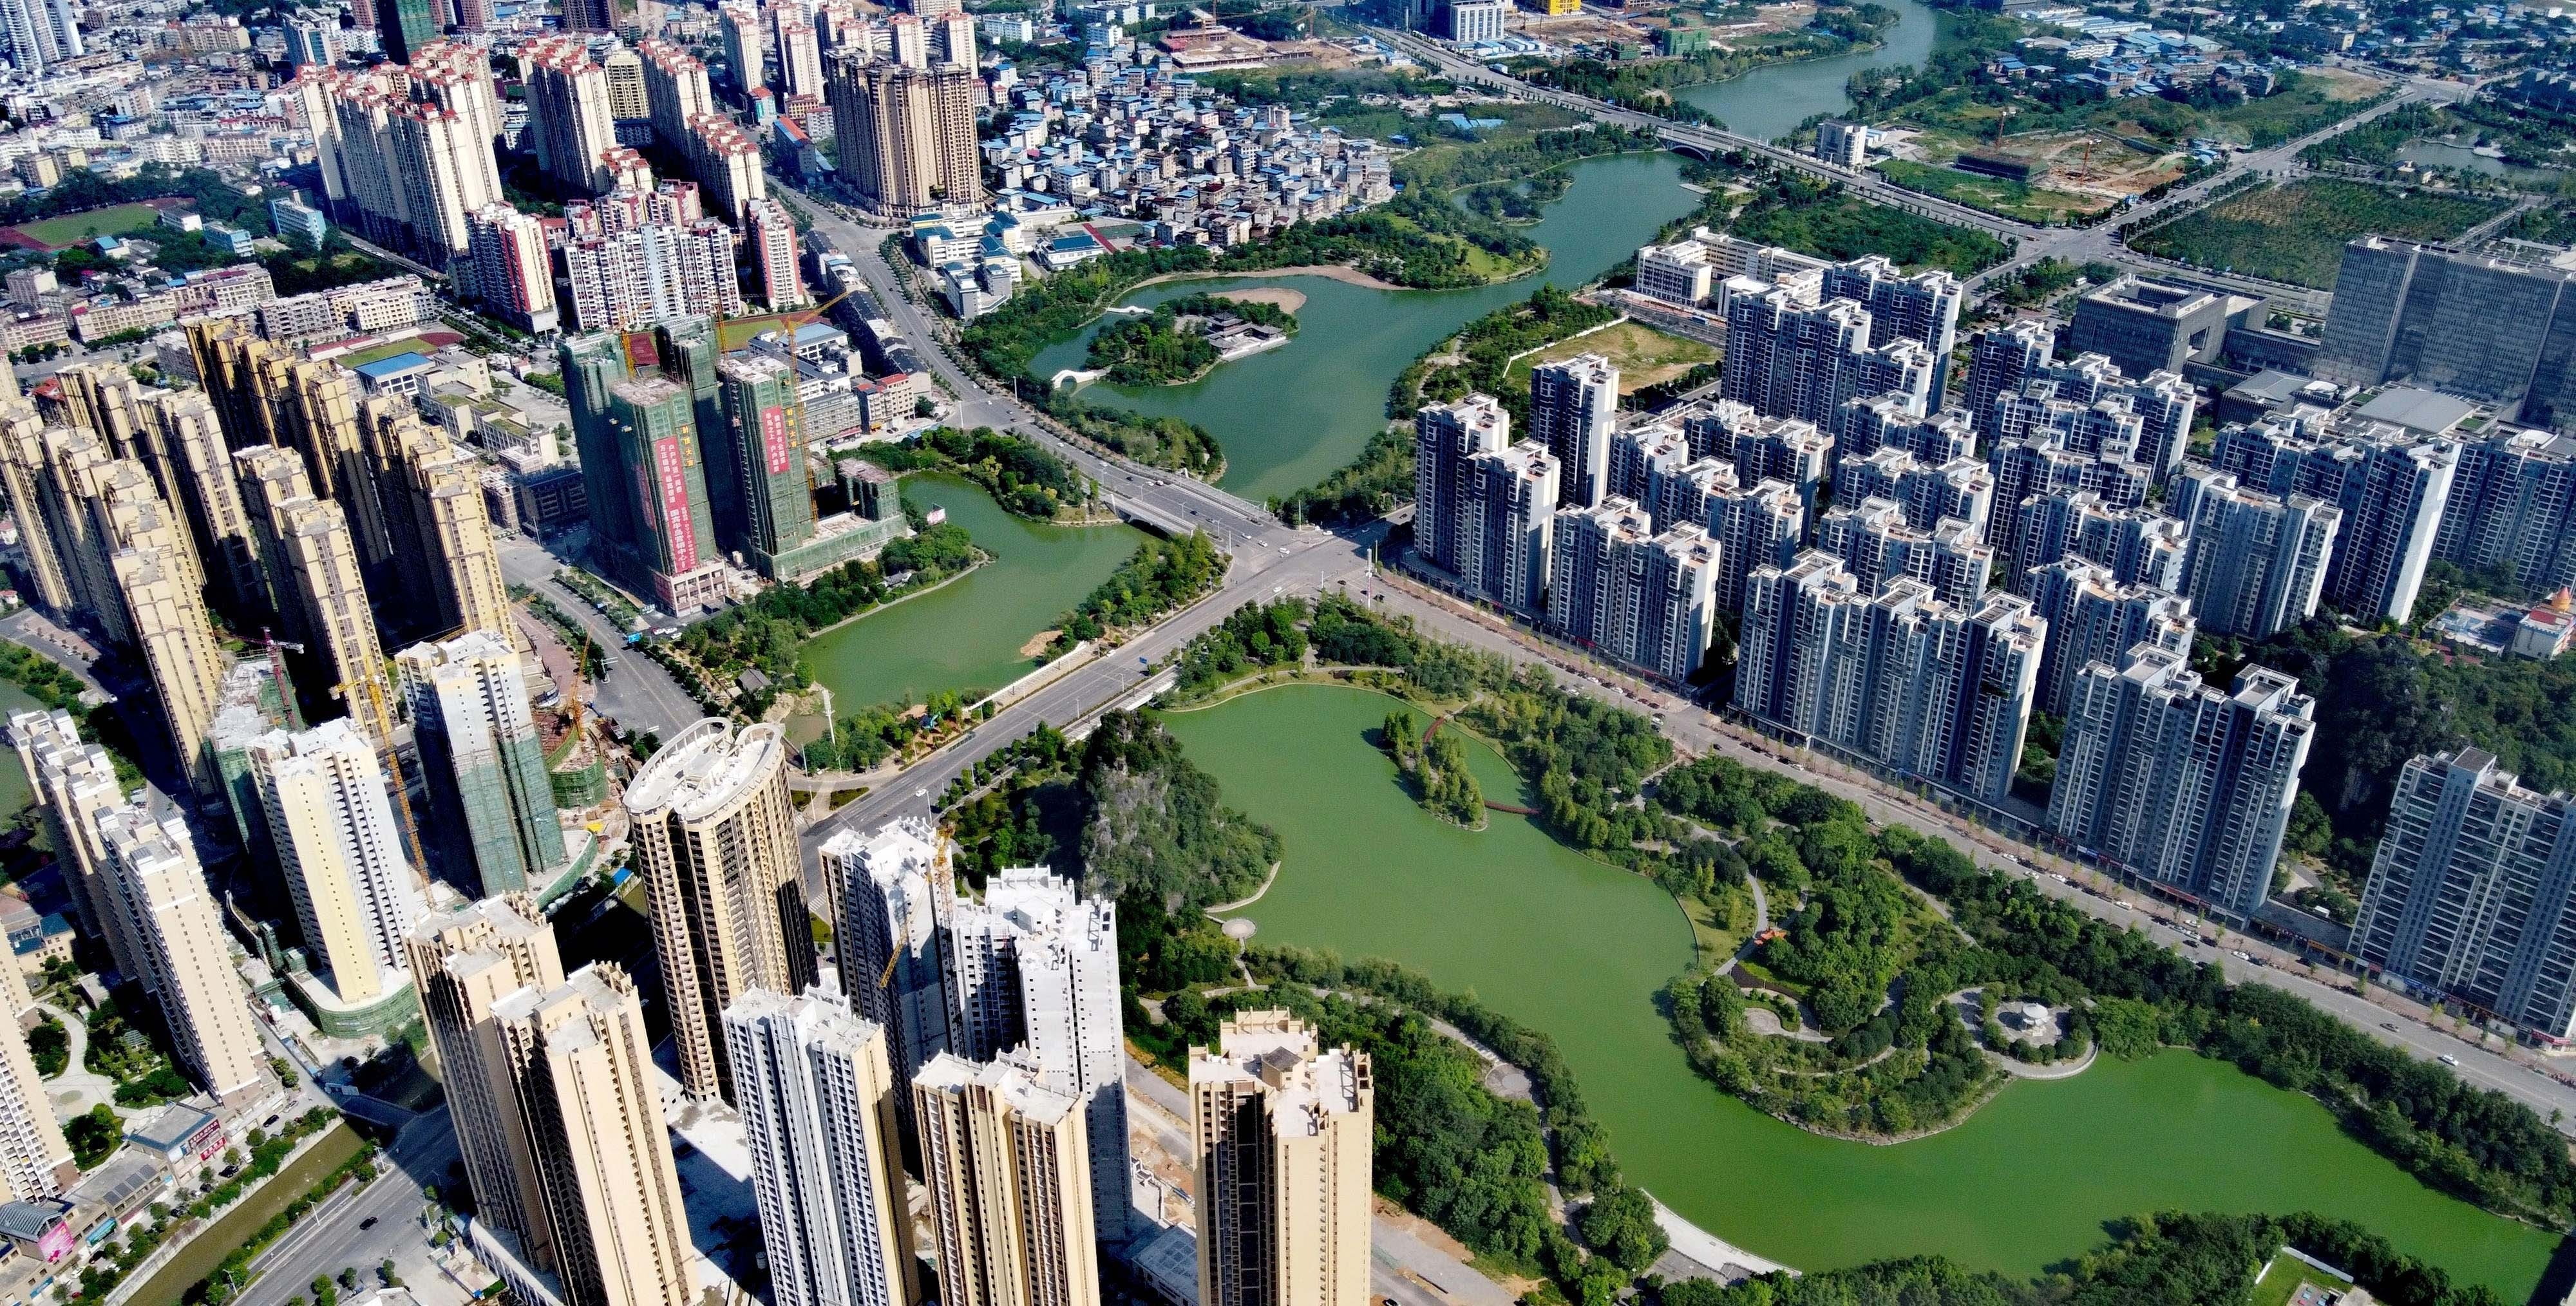 最高星级评价, 桂林市临桂新区将会是广西壮族自治区 第一个获得此